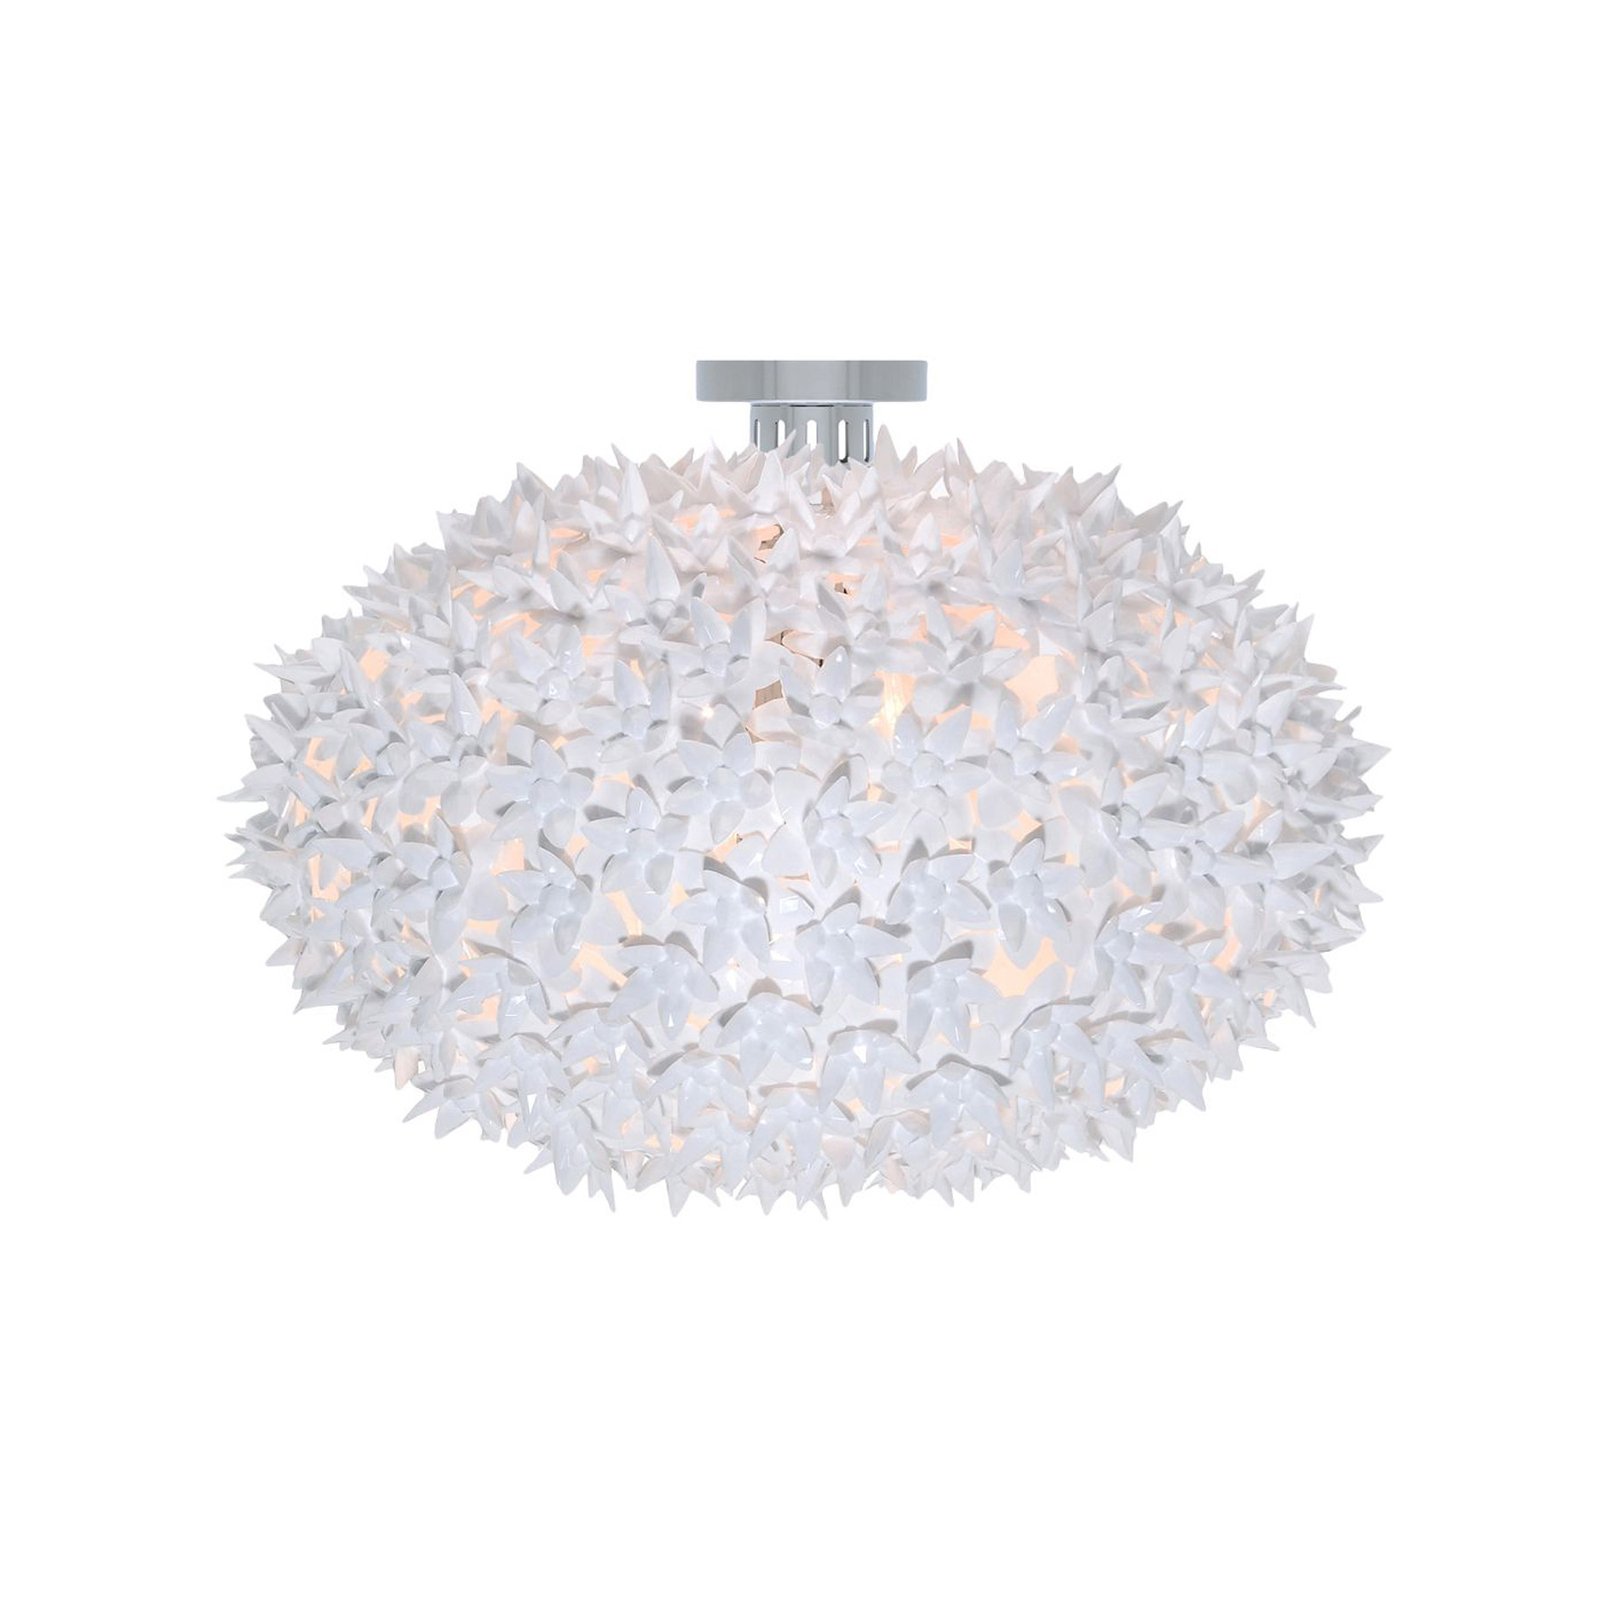 Kartell Bloom C1 LED ceiling light G9, white